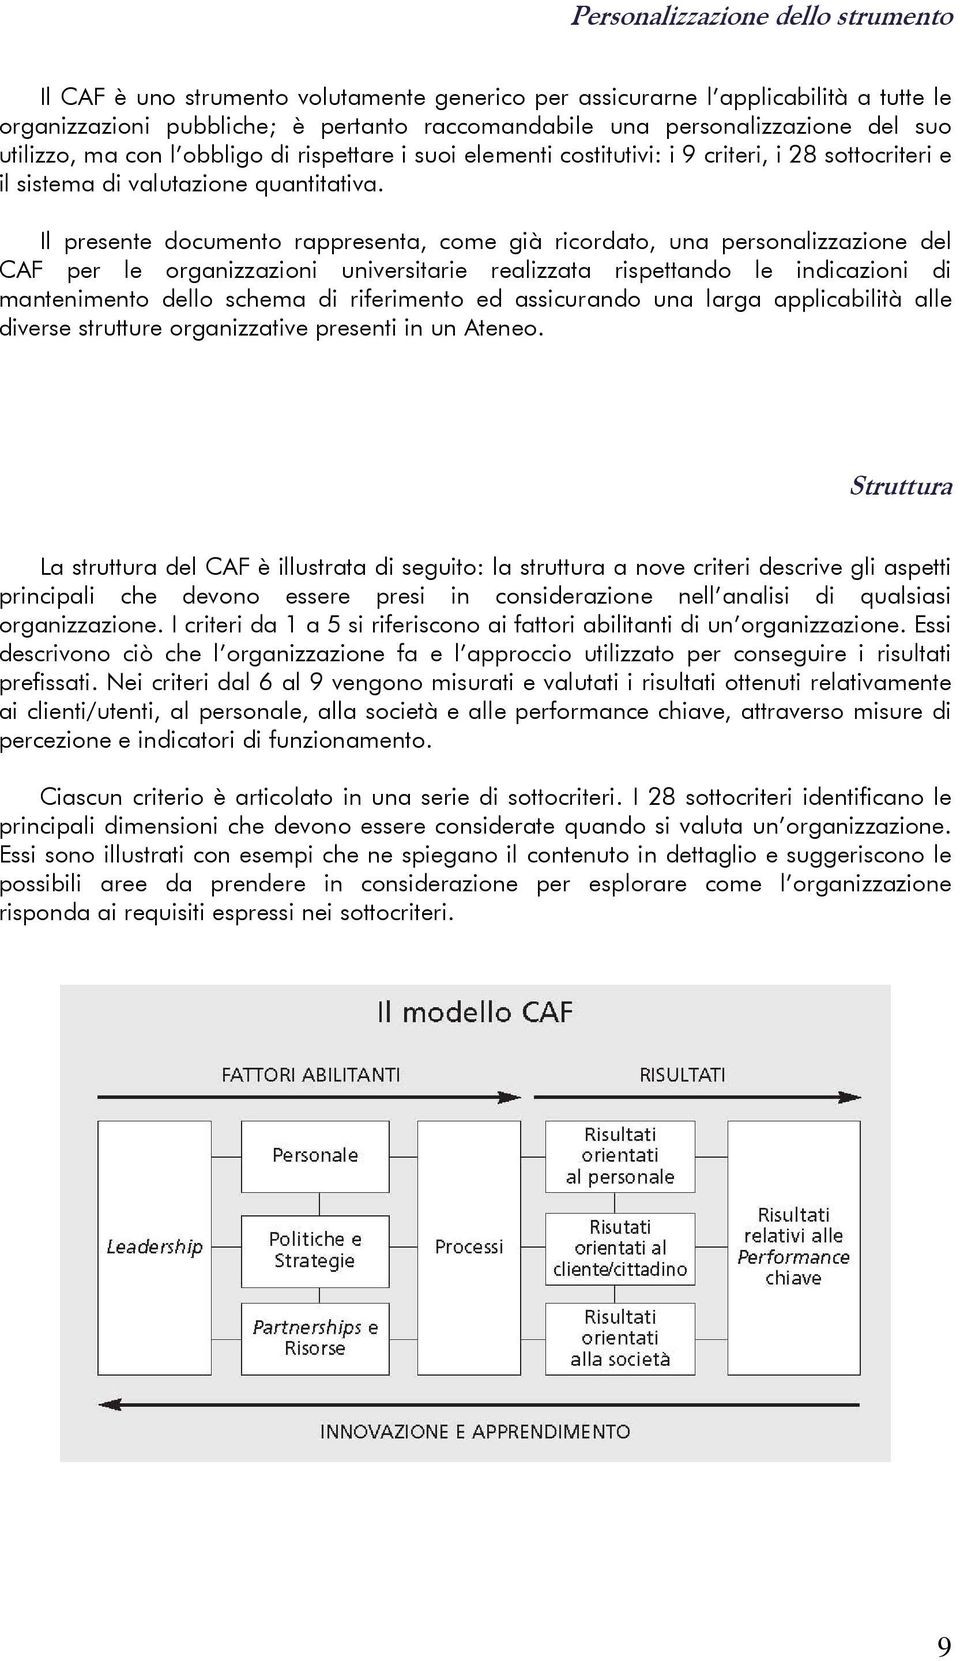 Il presente documento rappresenta, come già ricordato, una personalizzazione del CAF per le organizzazioni universitarie realizzata rispettando le indicazioni di mantenimento dello schema di